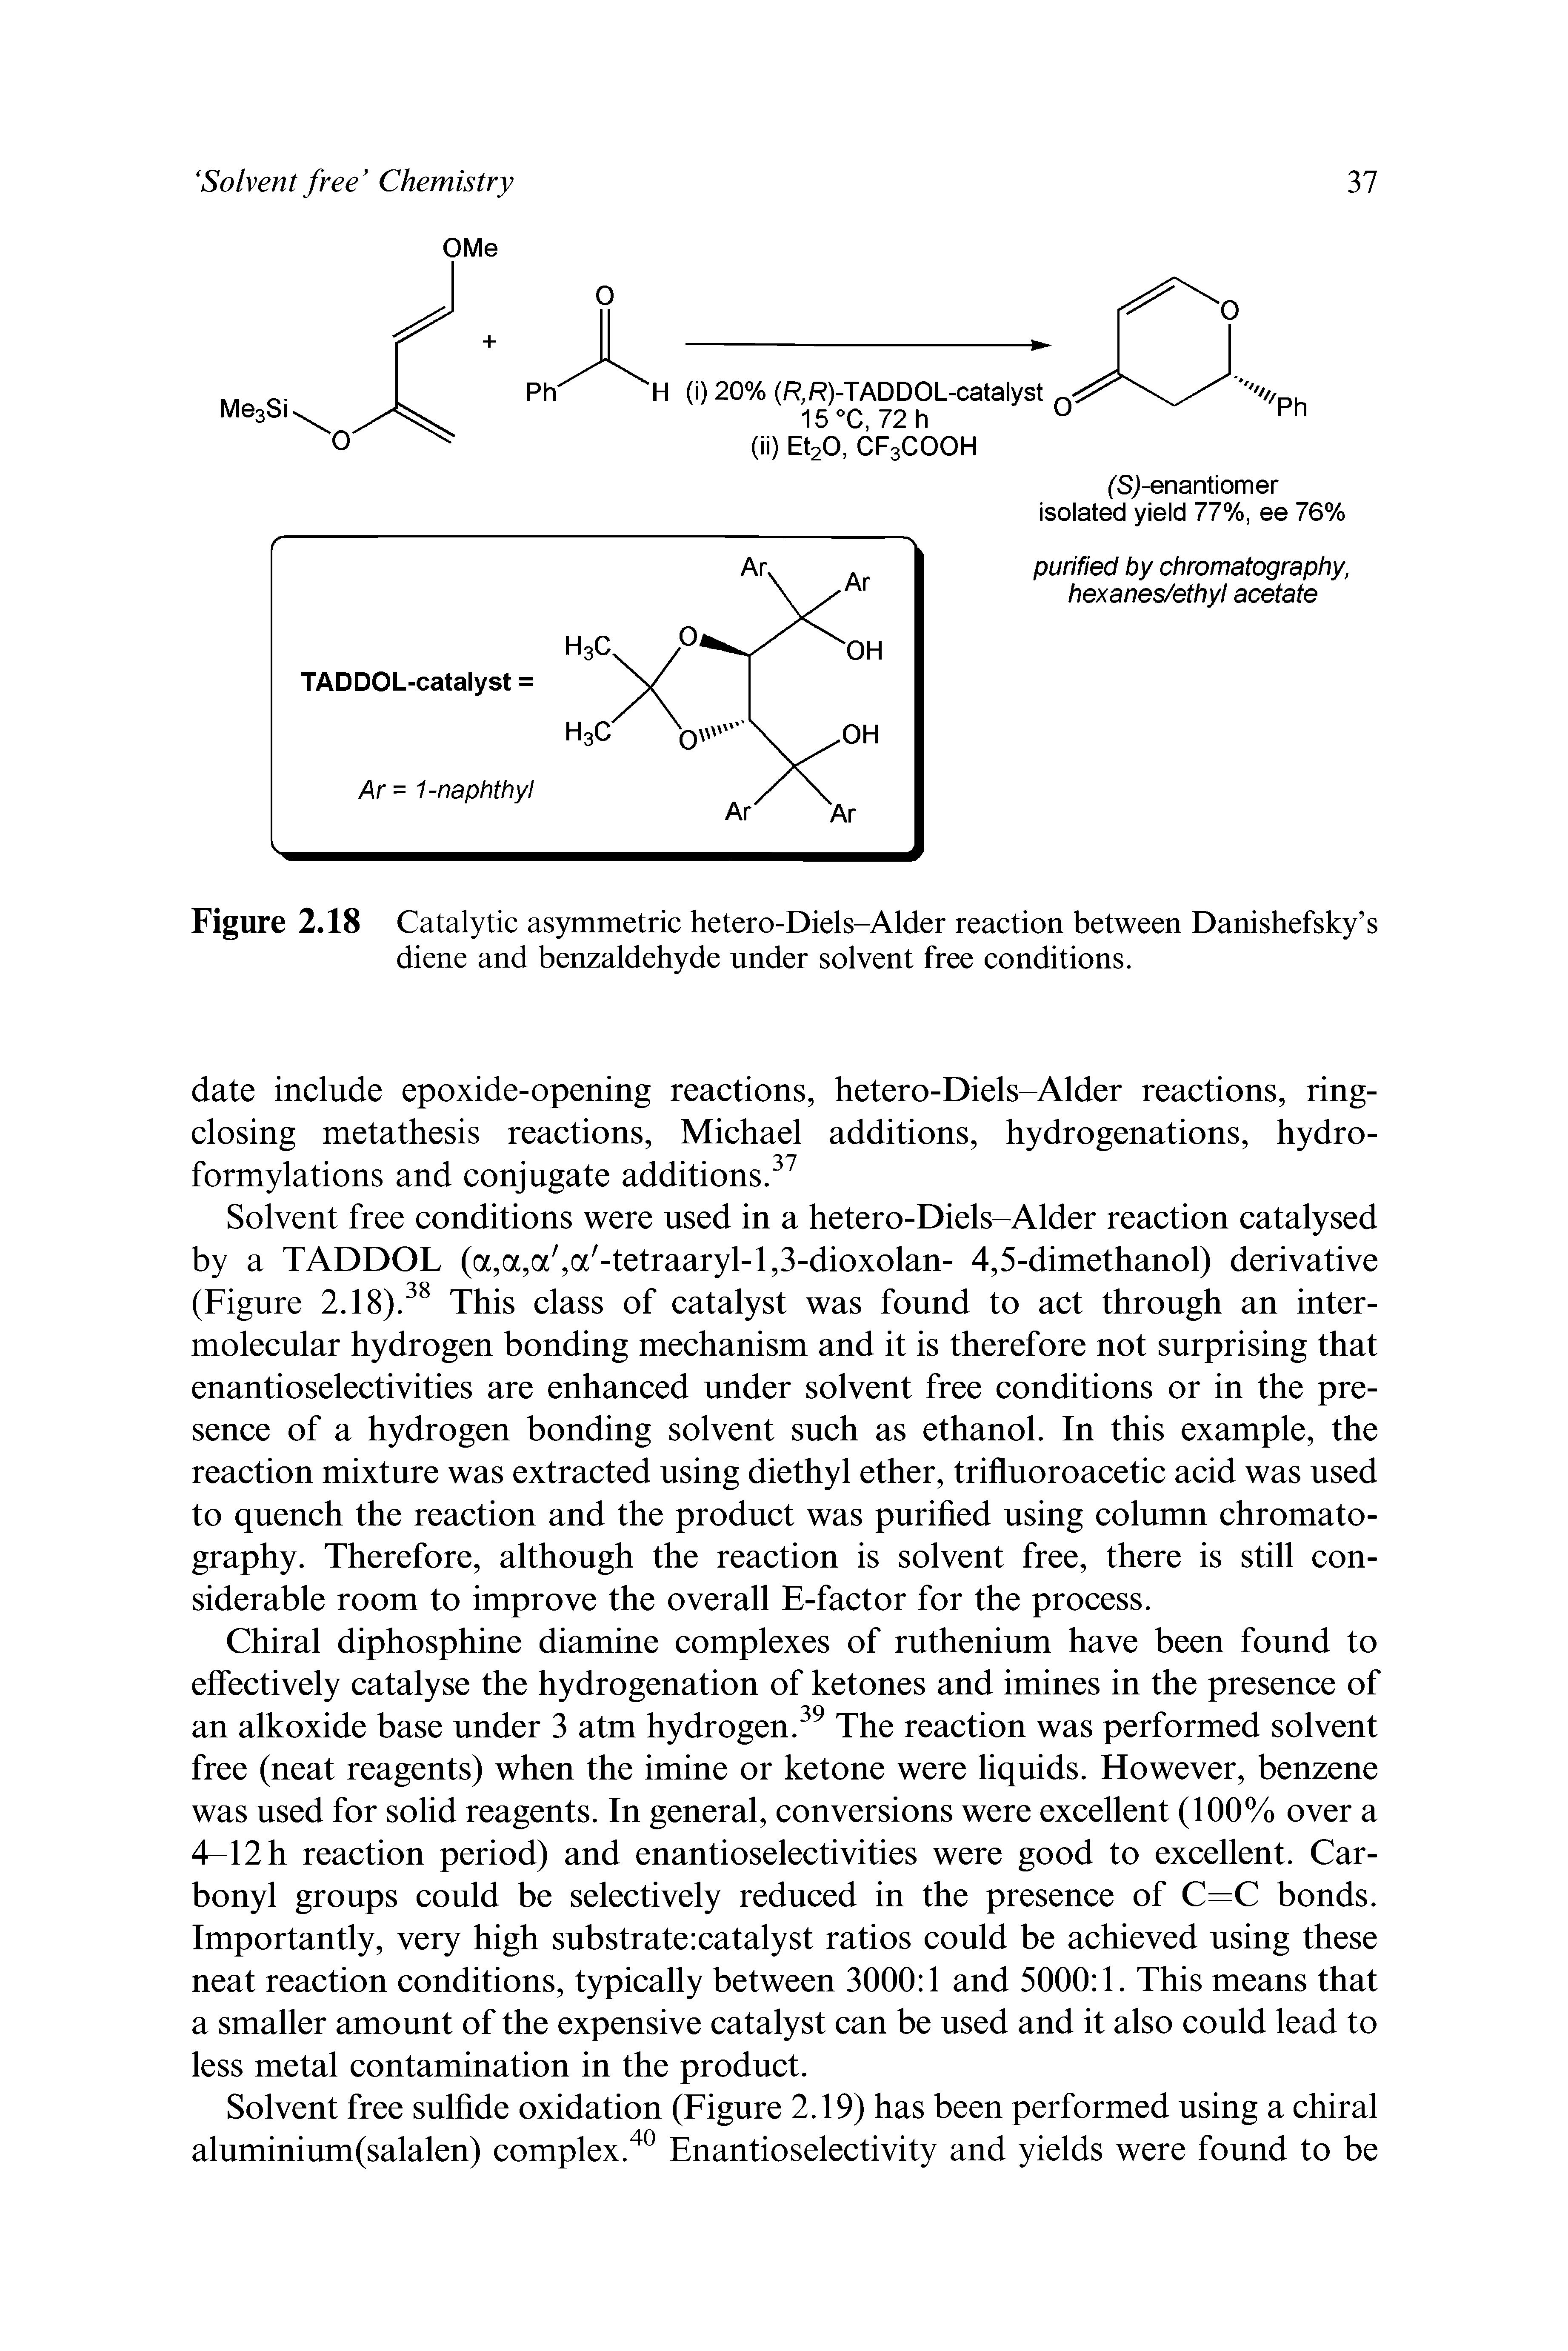 Figure 2,18 Catalytic asymmetric hetero-Diels-Alder reaction between Danishefsky s diene and benzaldehyde under solvent free conditions.